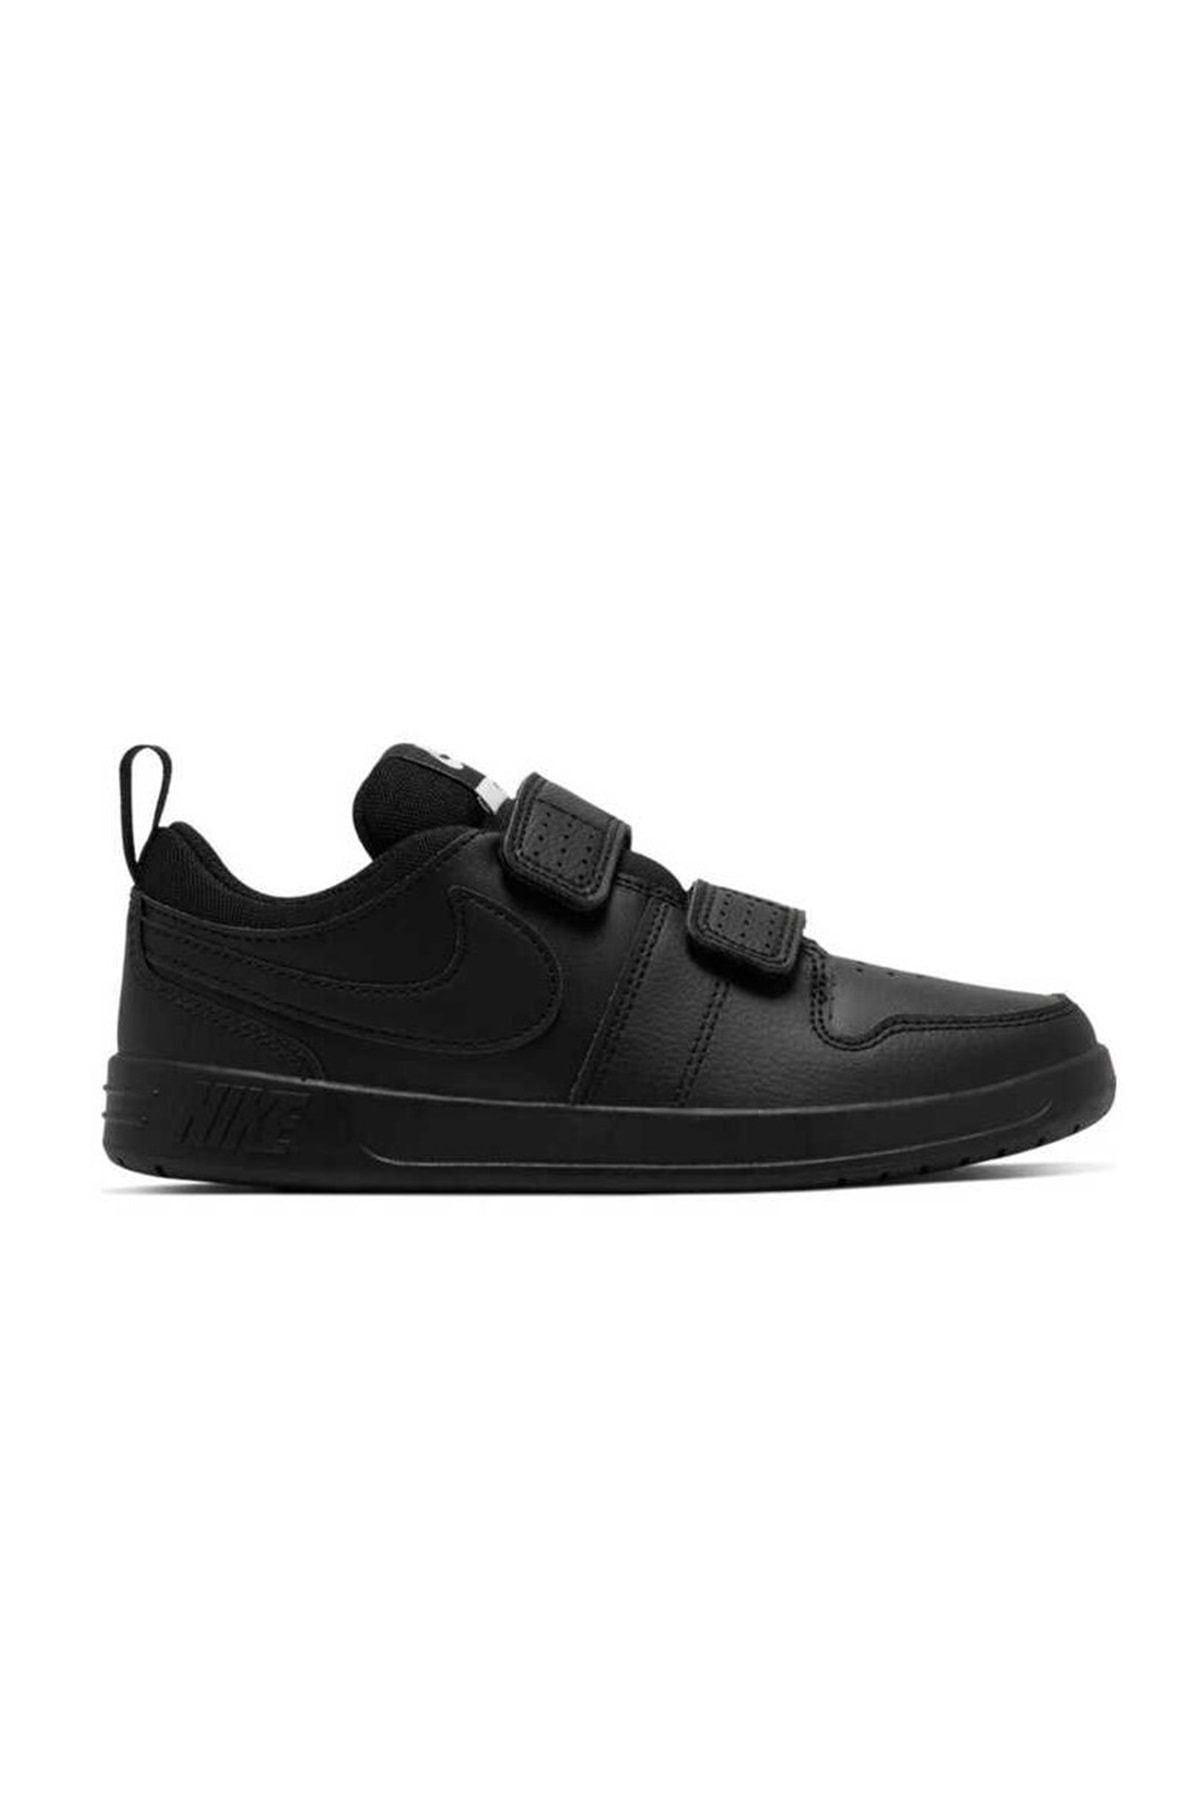 Nike Pıco 5 (PSV) Ar4161-001 Çocuk Spor Ayakkabı Siyah